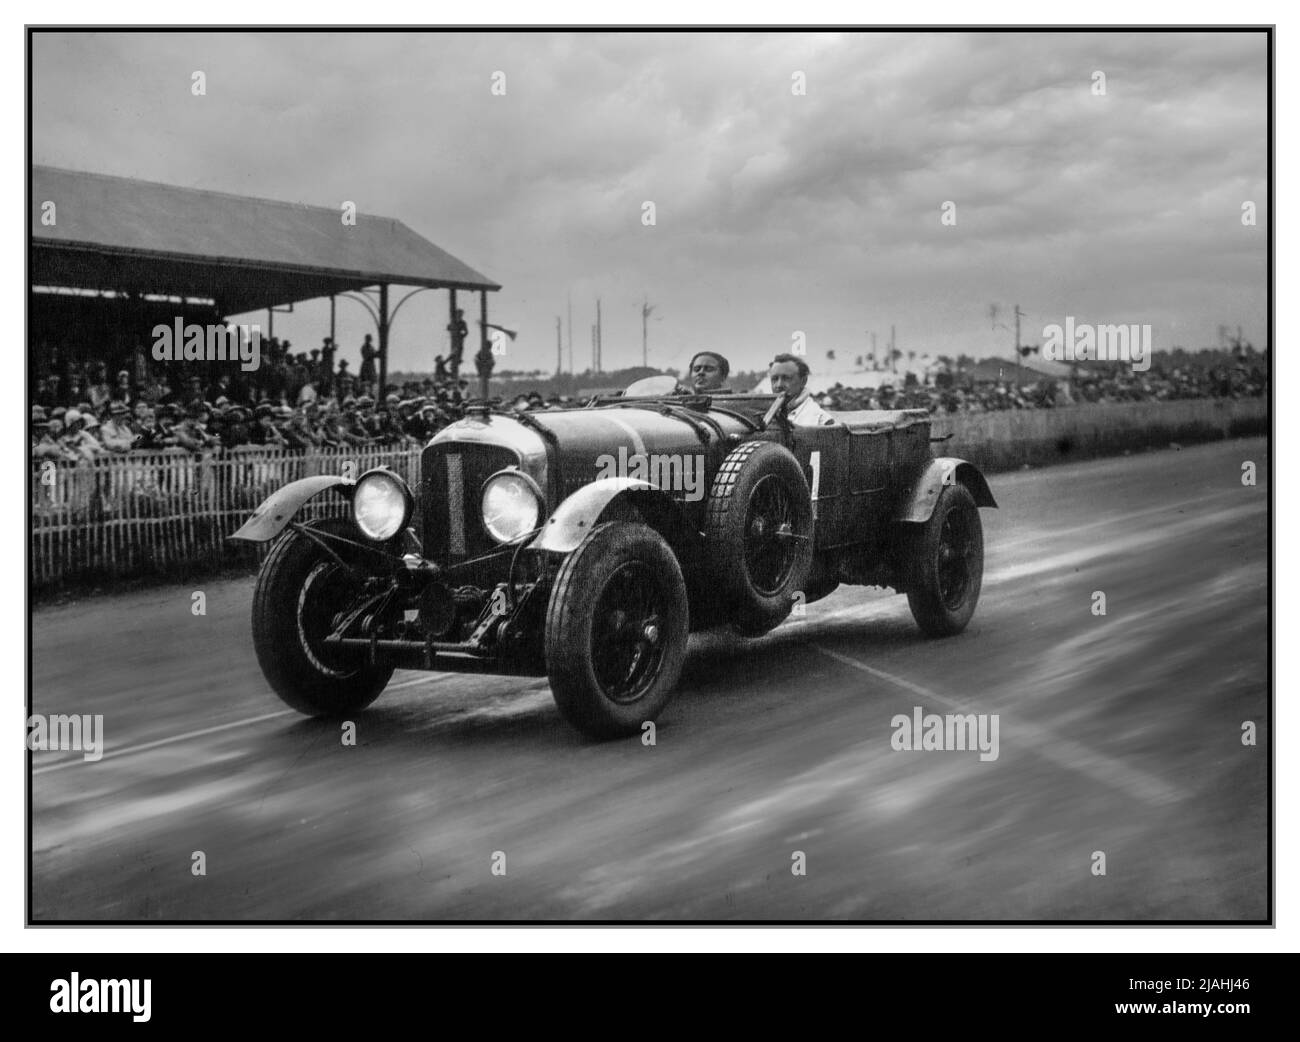 1929 VINTAGE LE MANS 24 ORE BENTLEY VINCITORE NUMERO 1 di Barnato e Birkin 1929 24 ore di le Mans la 1929 24 ore di le Mans è stato il Gran Premio d’Endurance 7th che si è svolto al Circuit de la Sarthe il 15 e 16 giugno 1929 in Bentley, la più importante vetrina della gara di oggi, ha ottenuto una vittoria completa conquistando i primi quattro posti a distanza. Il direttore di Bentley Woolf Barnato ha ripetuto la vittoria dell'anno precedente, questa volta co-guidato dal collega Bentley Boy Sir Henry "Tim" Birkin. Avevano condotto dall'inizio alla fine, stabilendo un nuovo record di distanza e giro. Foto Stock